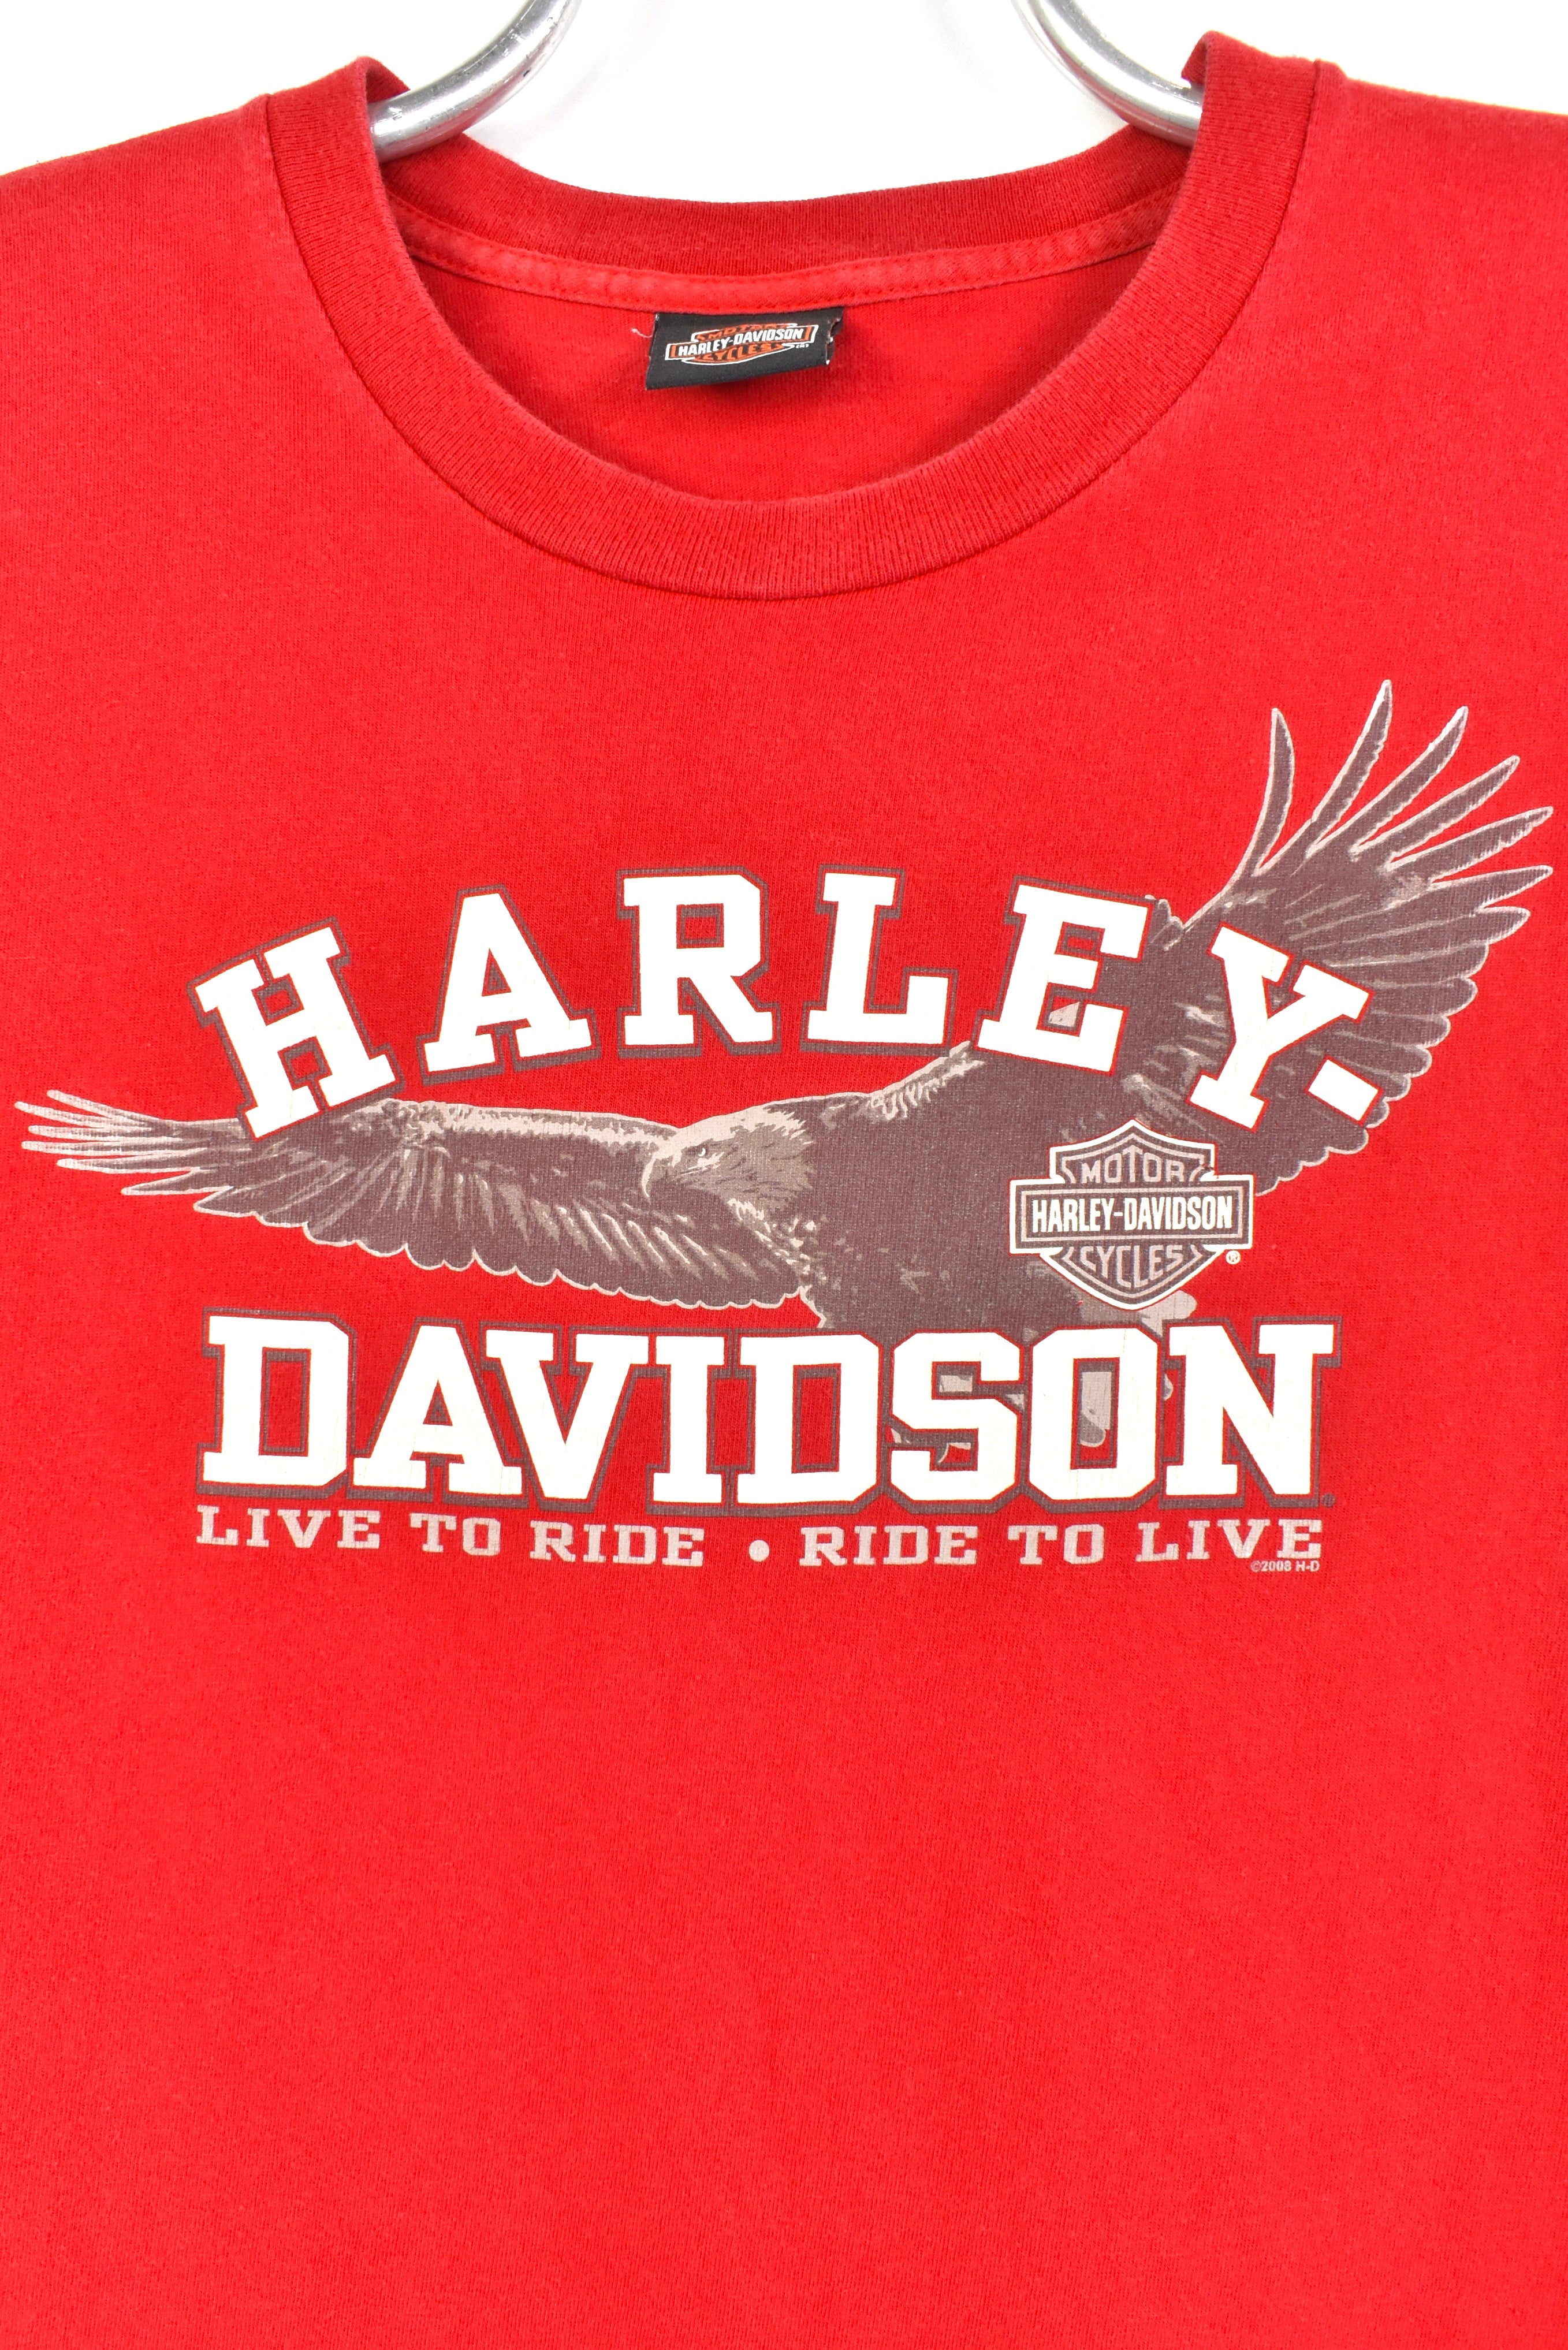 Vintage Harley Davidson red T-Shirt | LARGE HARLEY DAVIDSON